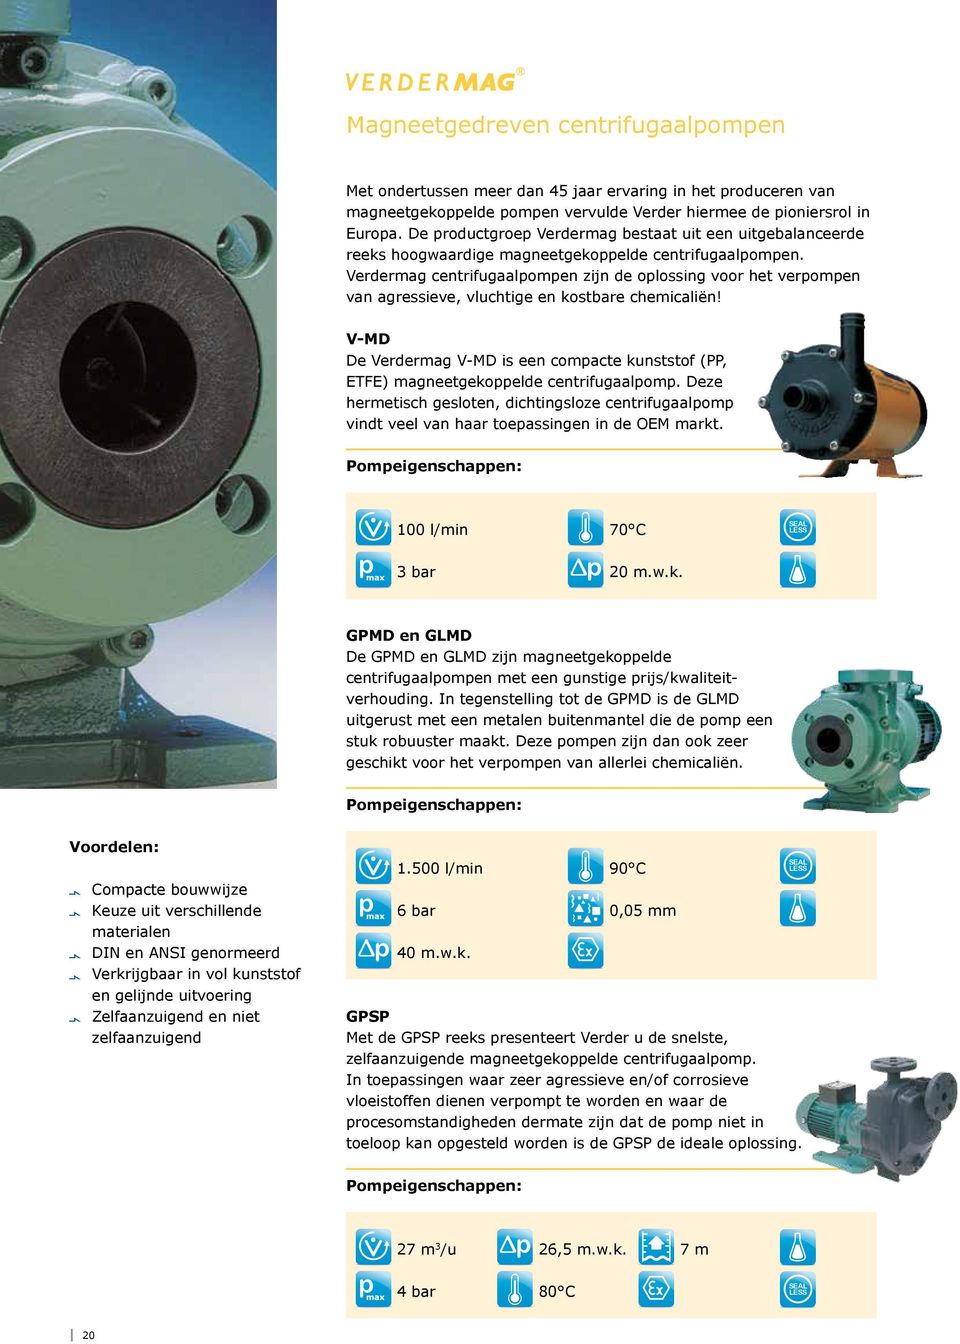 Verdermag centrifugaalpompen zijn de oplossing voor het verpompen van agressieve, vluchtige en kostbare chemicaliën!